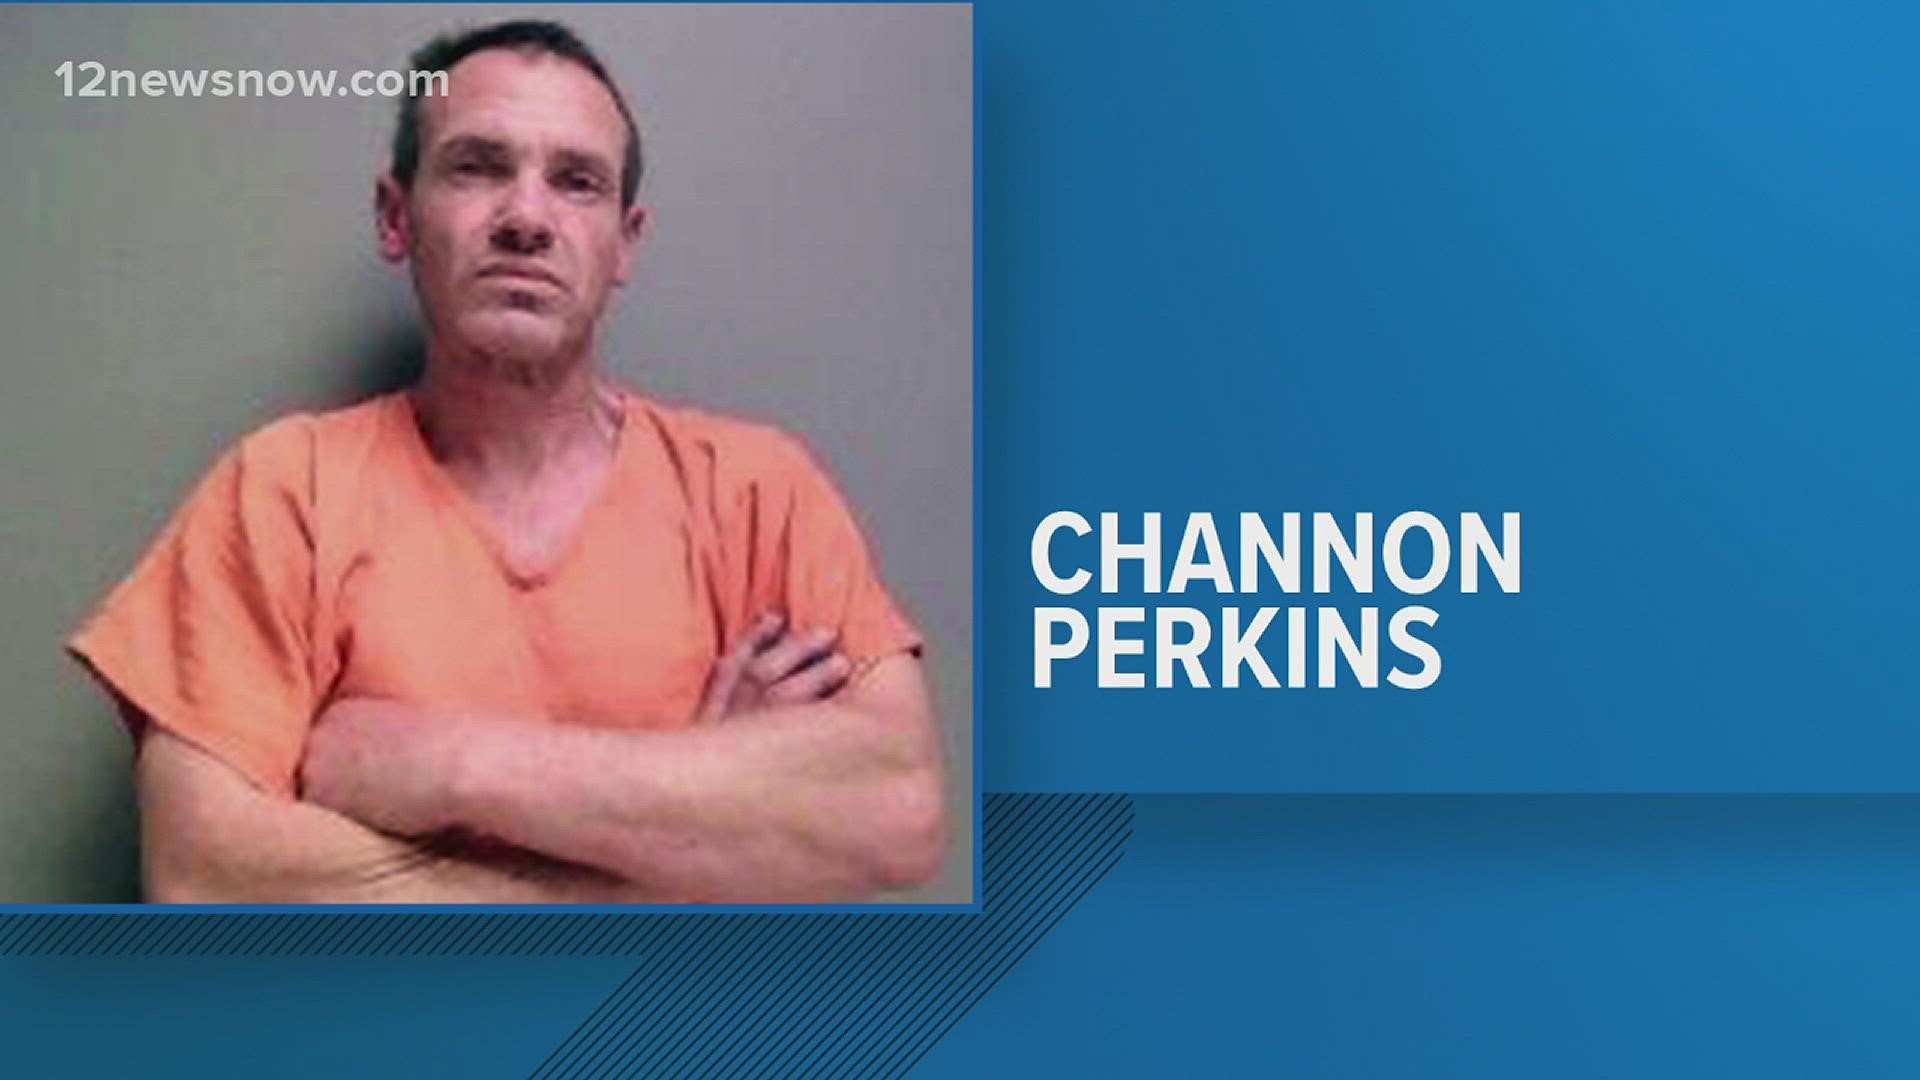 Officials say he was last seen in his orange jail uniform.